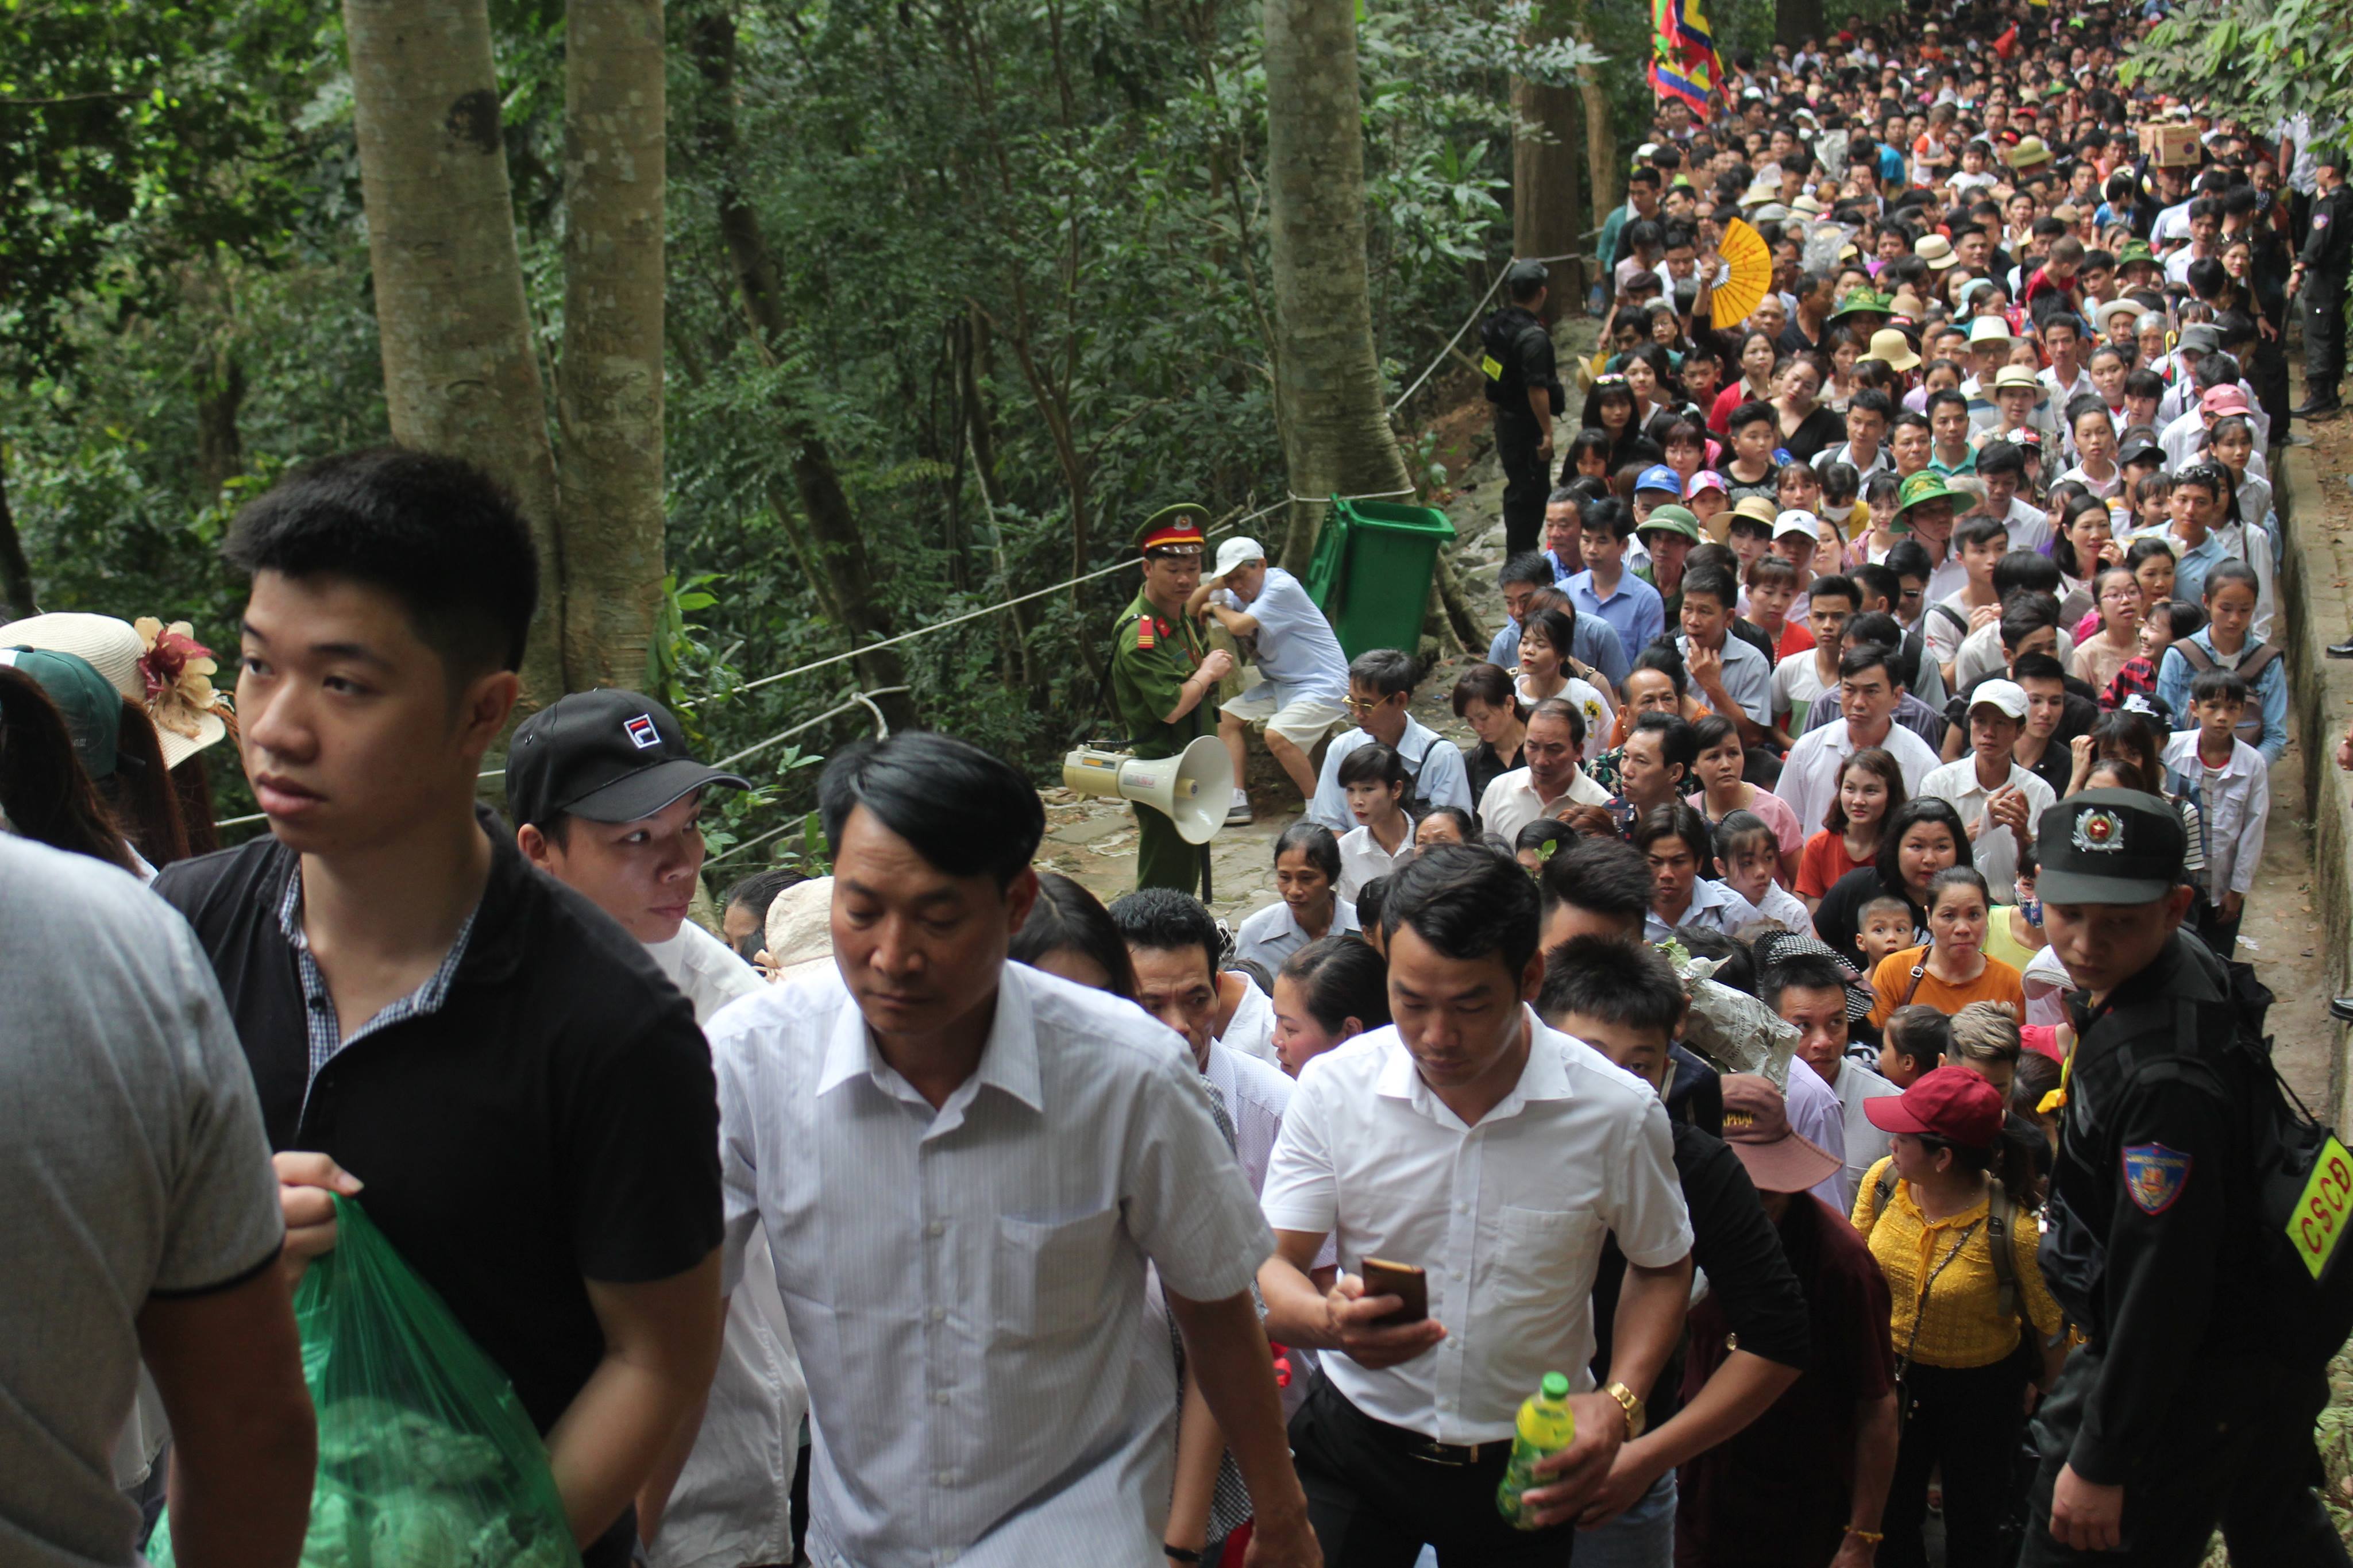 Chưa chính hội, cả triệu du khách đã ùn ùn đổ về đền Hùng